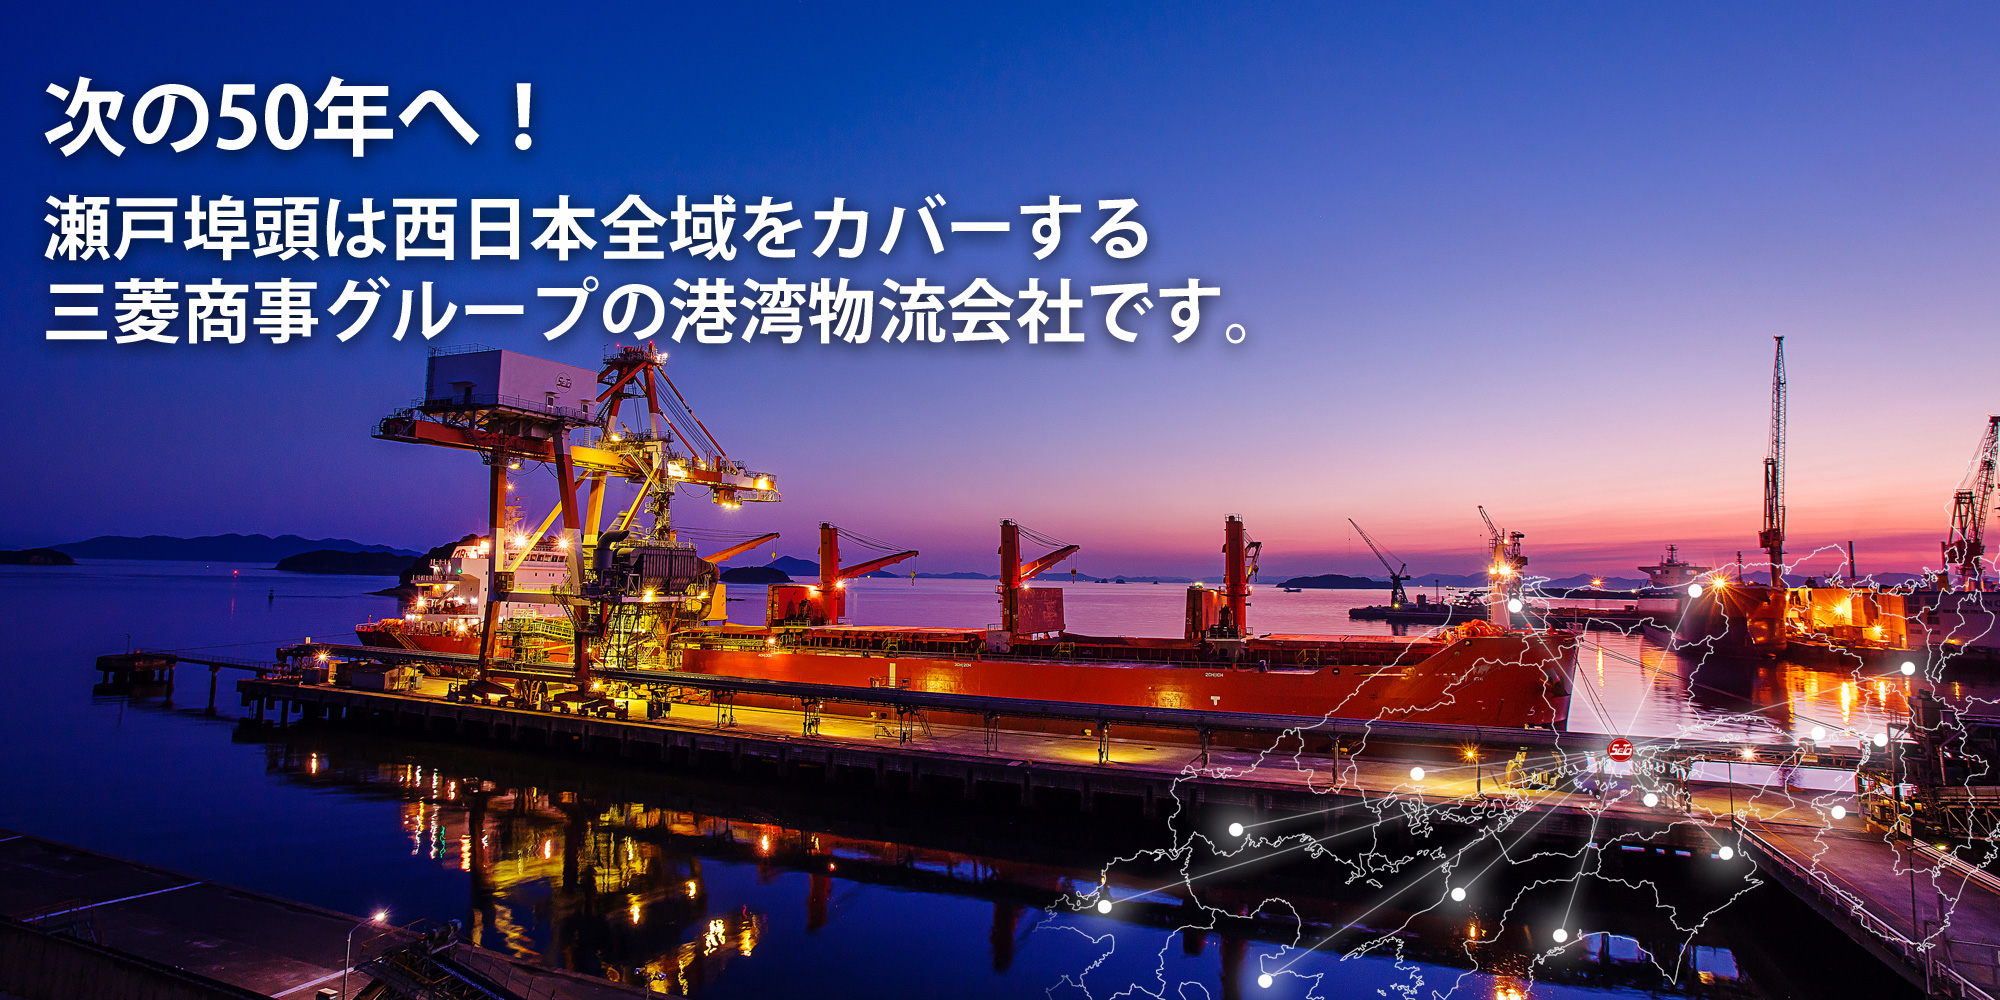 50年のその先へ / 瀬戸埠頭は2018年に創立50年を迎えた、西日本全域をカバーする三菱グループのターミナルロジスティクス会社です。